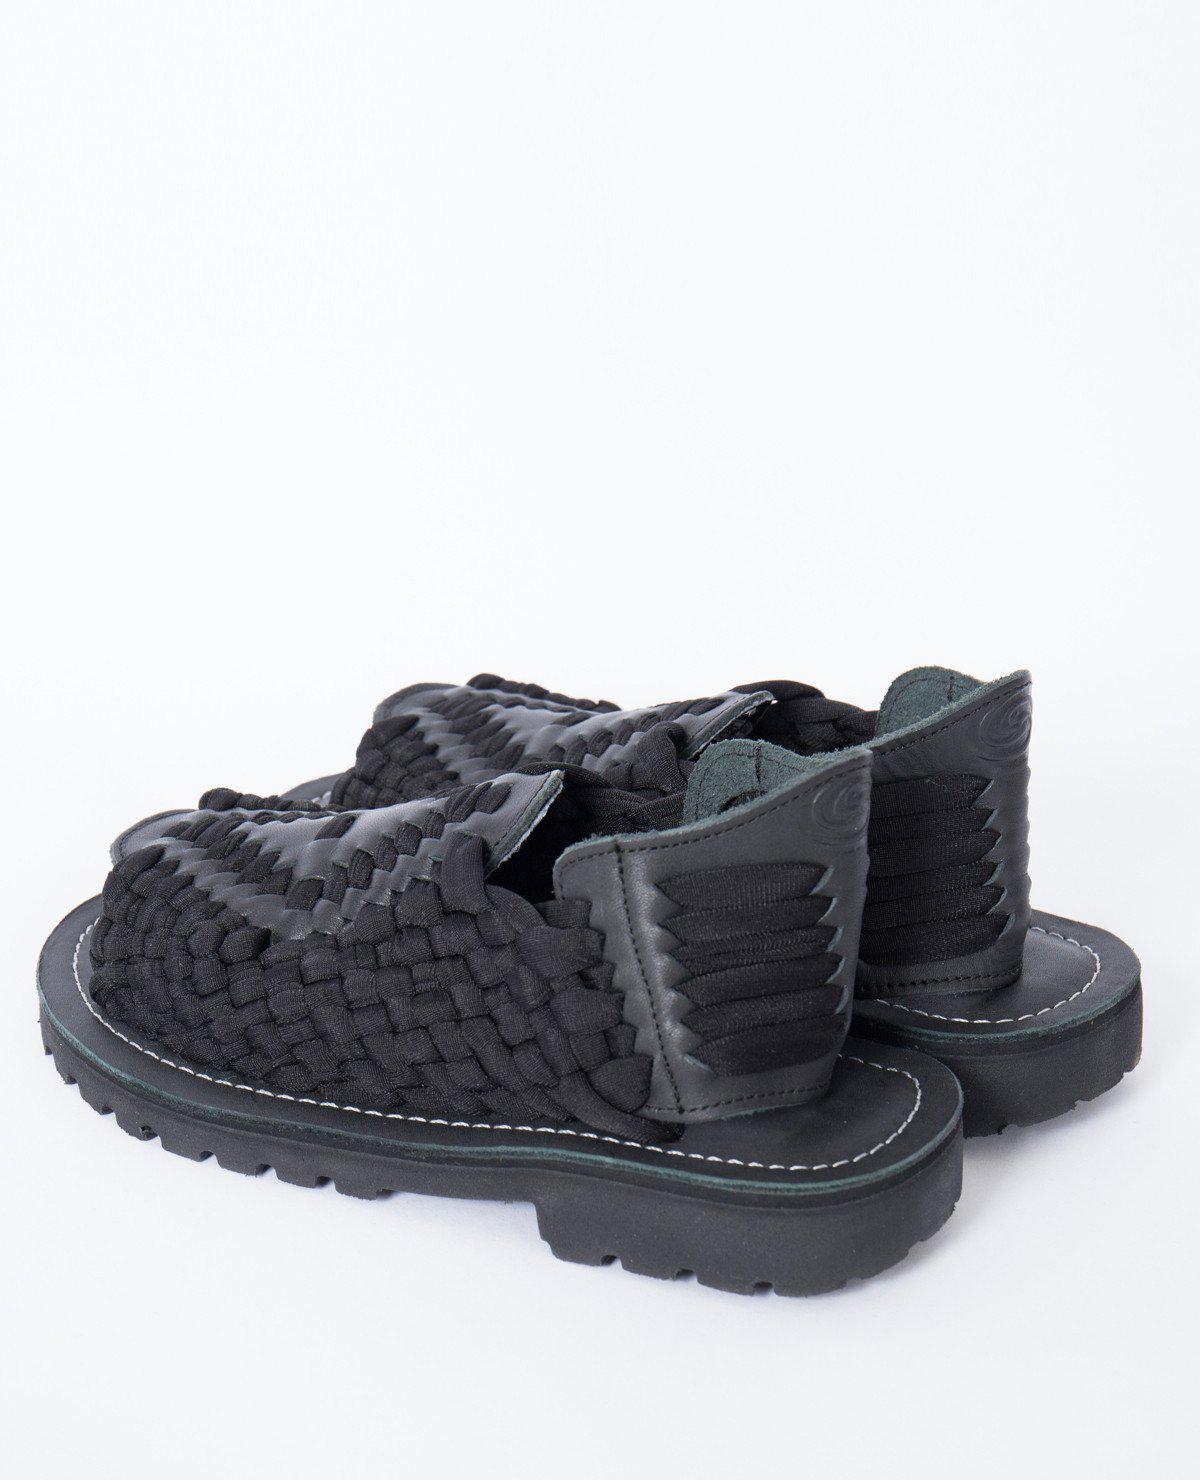 Lyst - Chubasco Aztec Sandals / Black in Black for Men